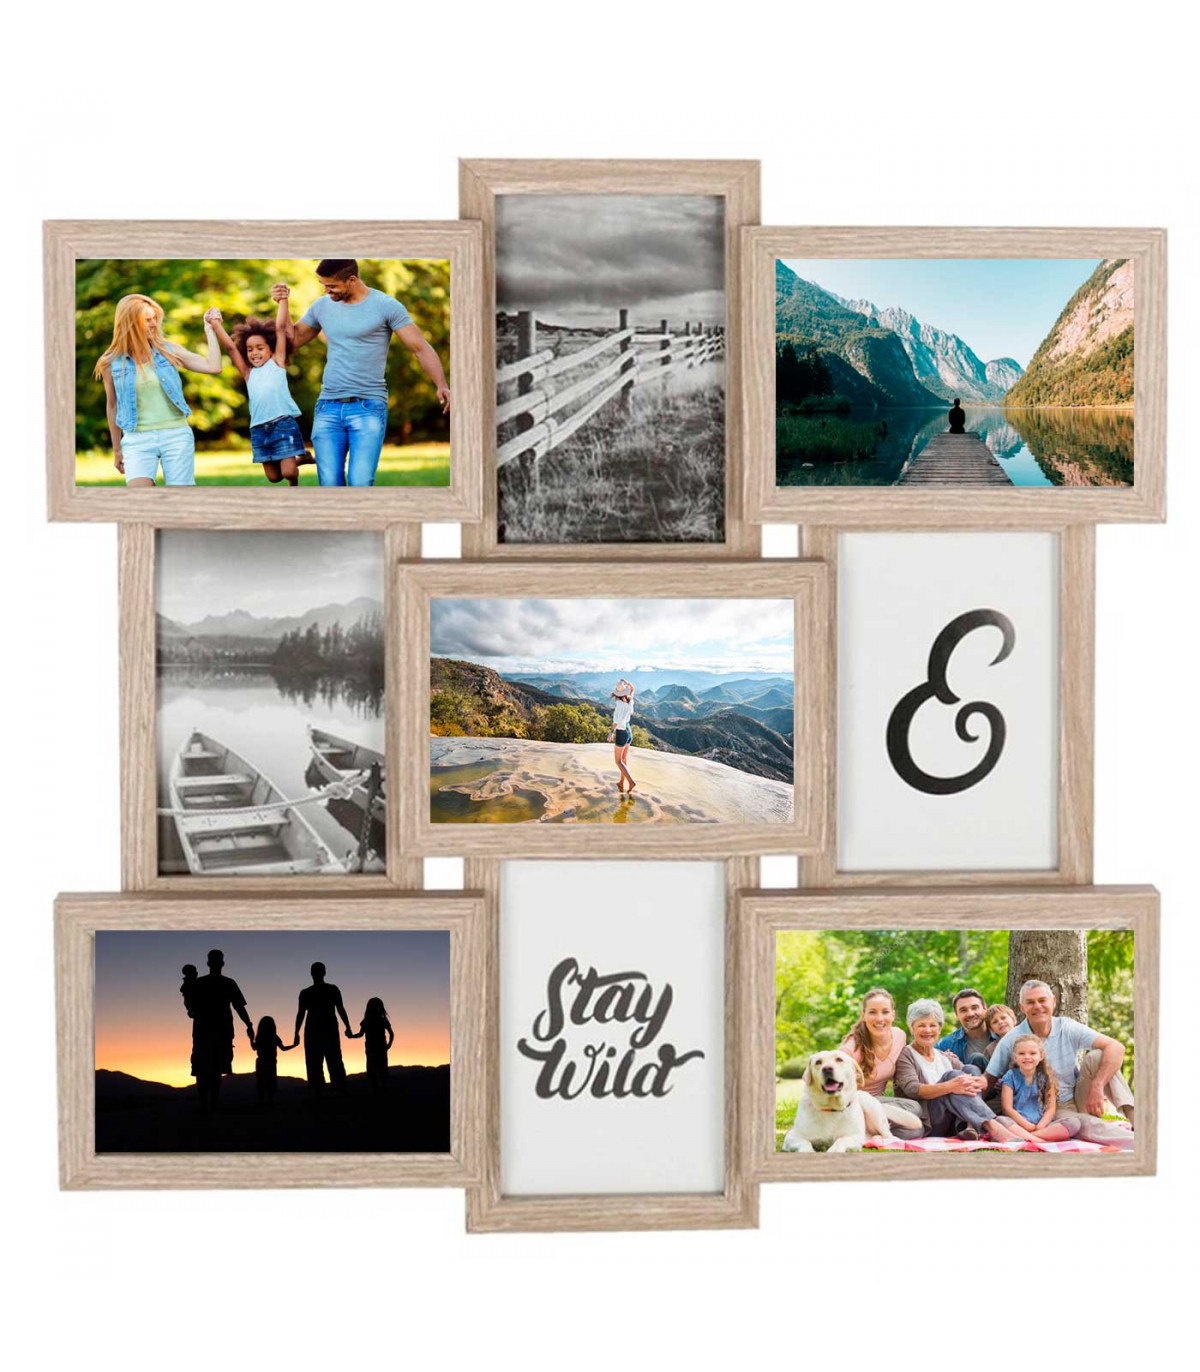 Portafotos de pared múltiples para llenar tu casa de recuerdos inolvidables